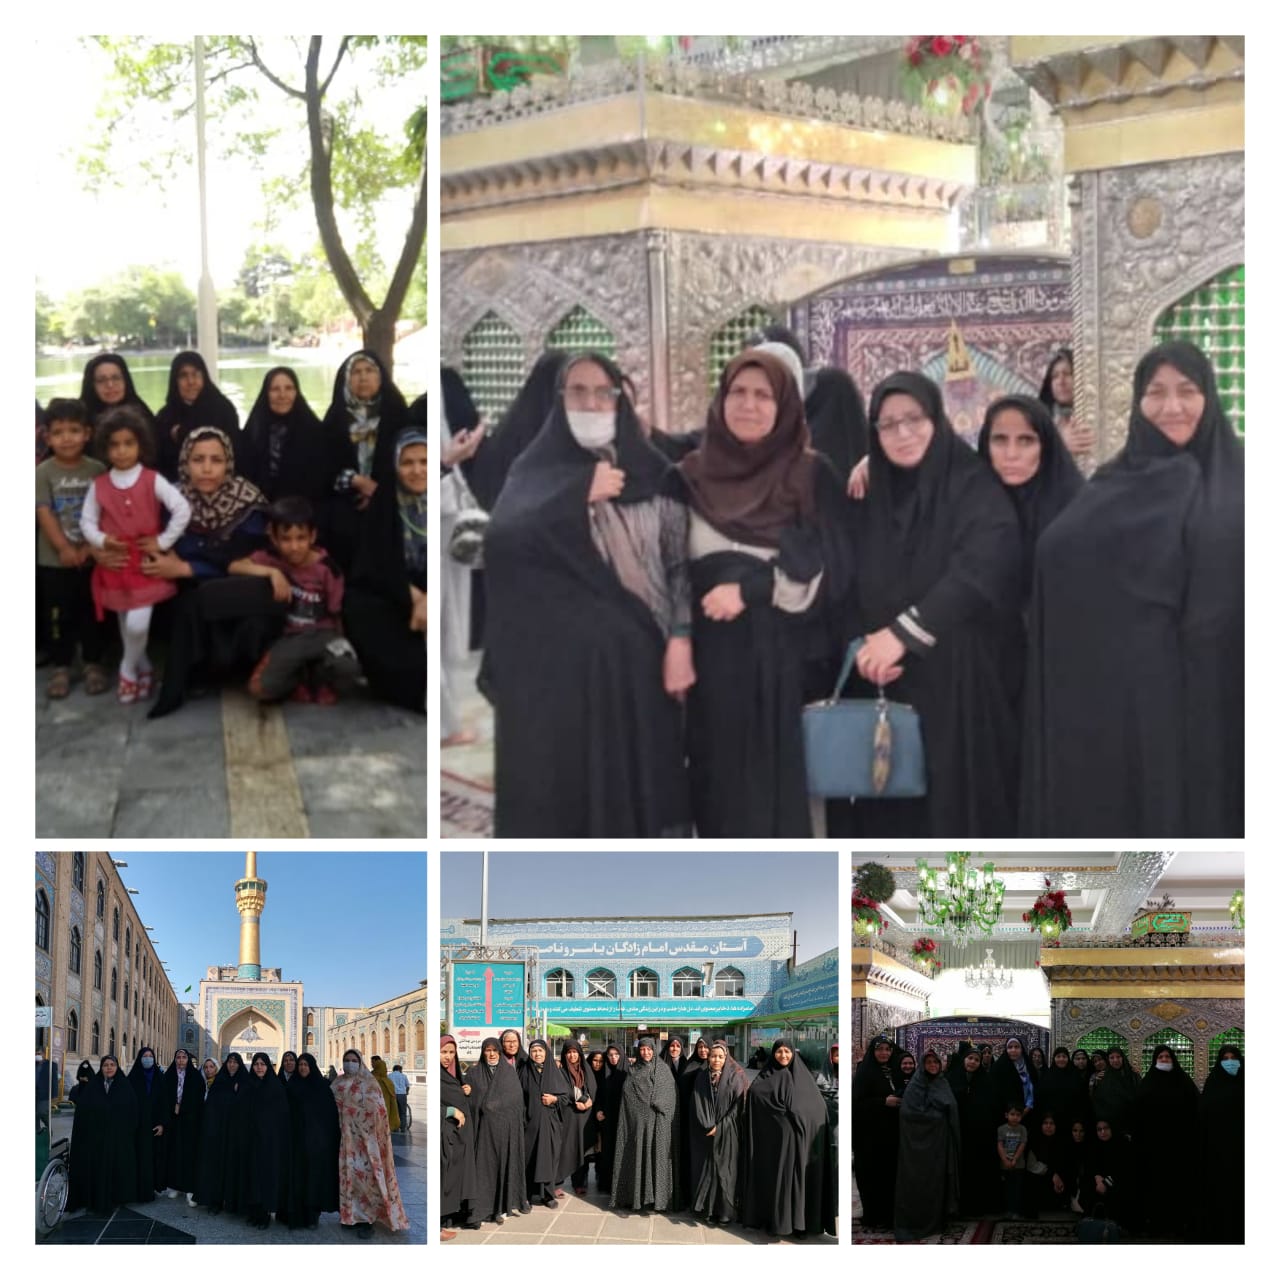 اردوي زيارتي بانوان مسجدي اسفراين به مشهد مقدس